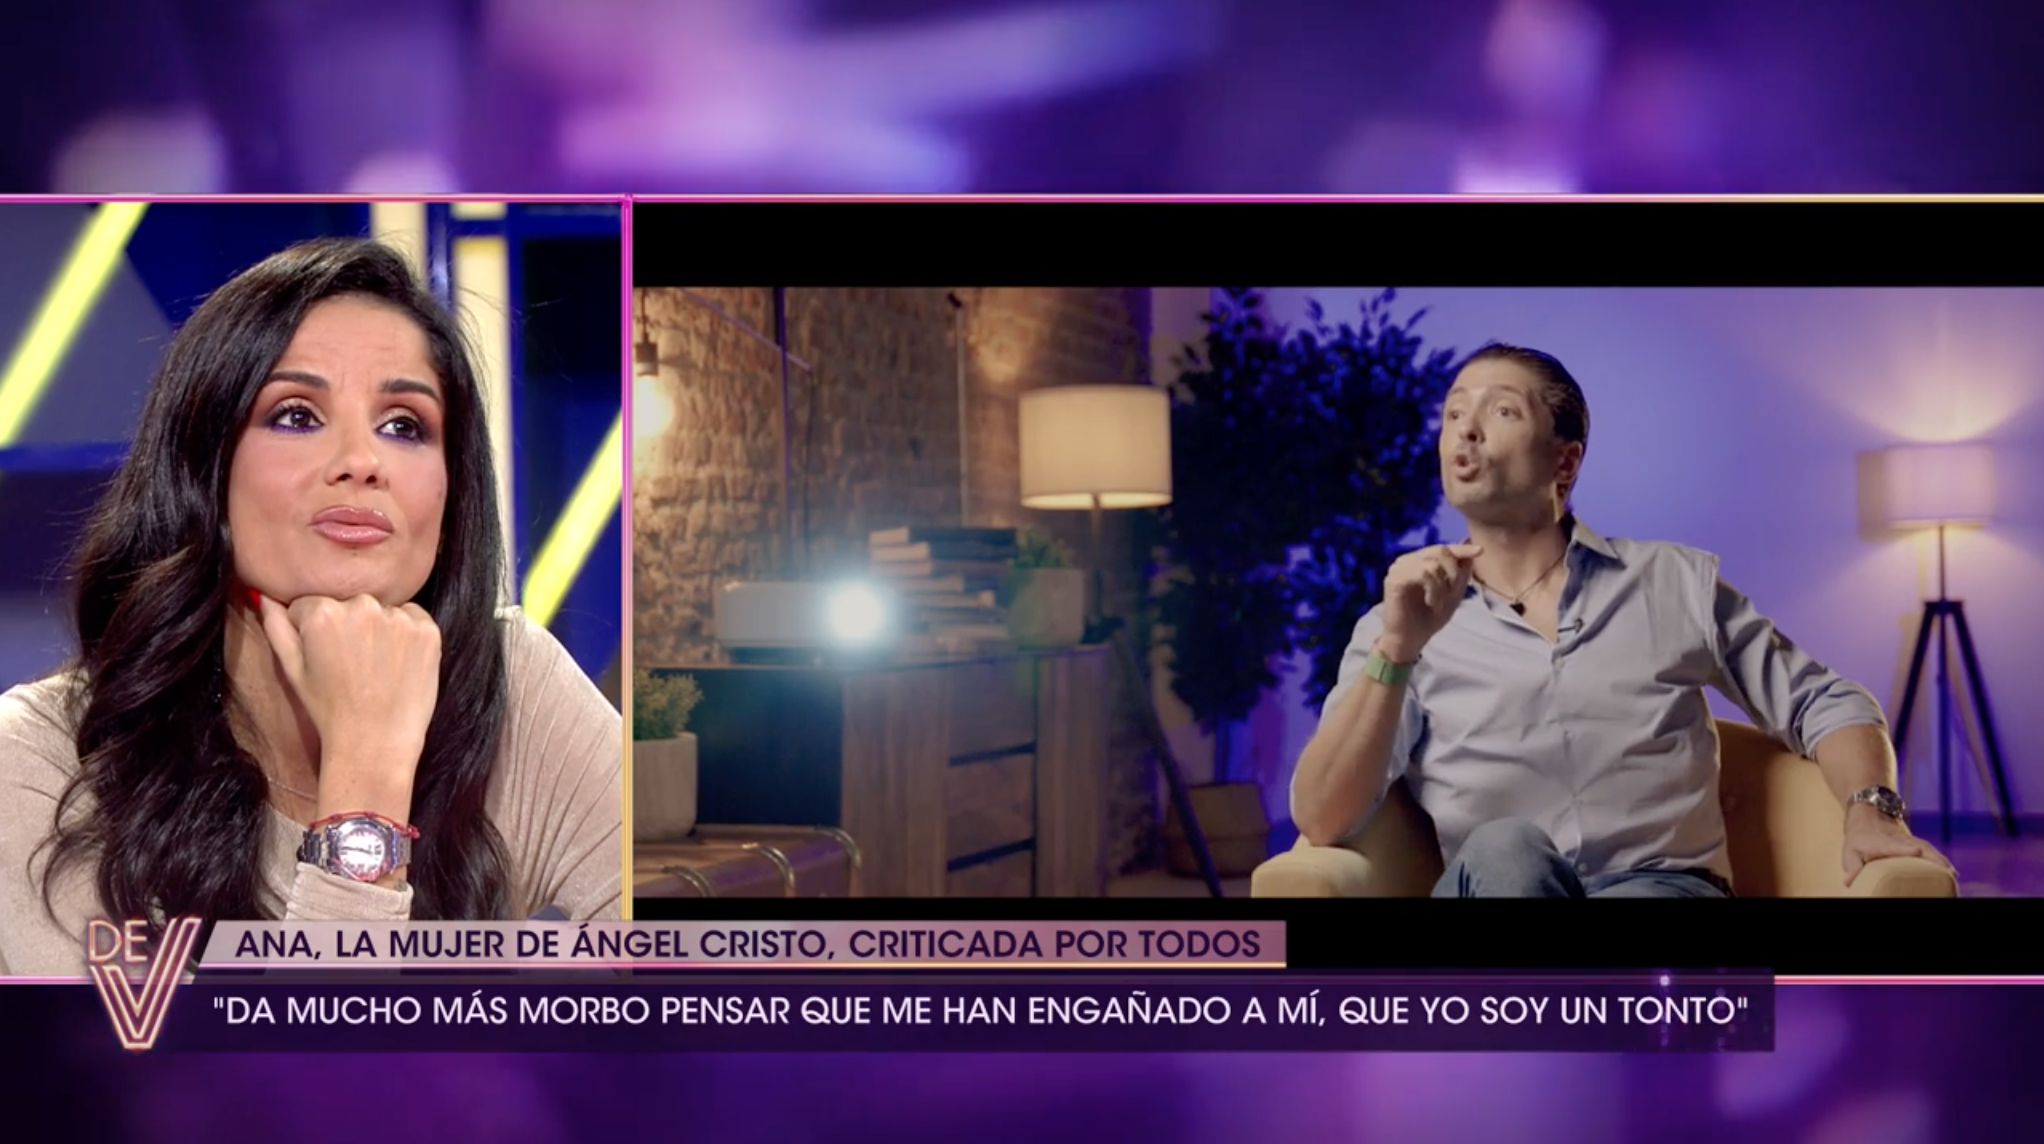 Ángel Cristo durante su entrevista en 'De Viernes' mientras Ana Herminia le veía en plató